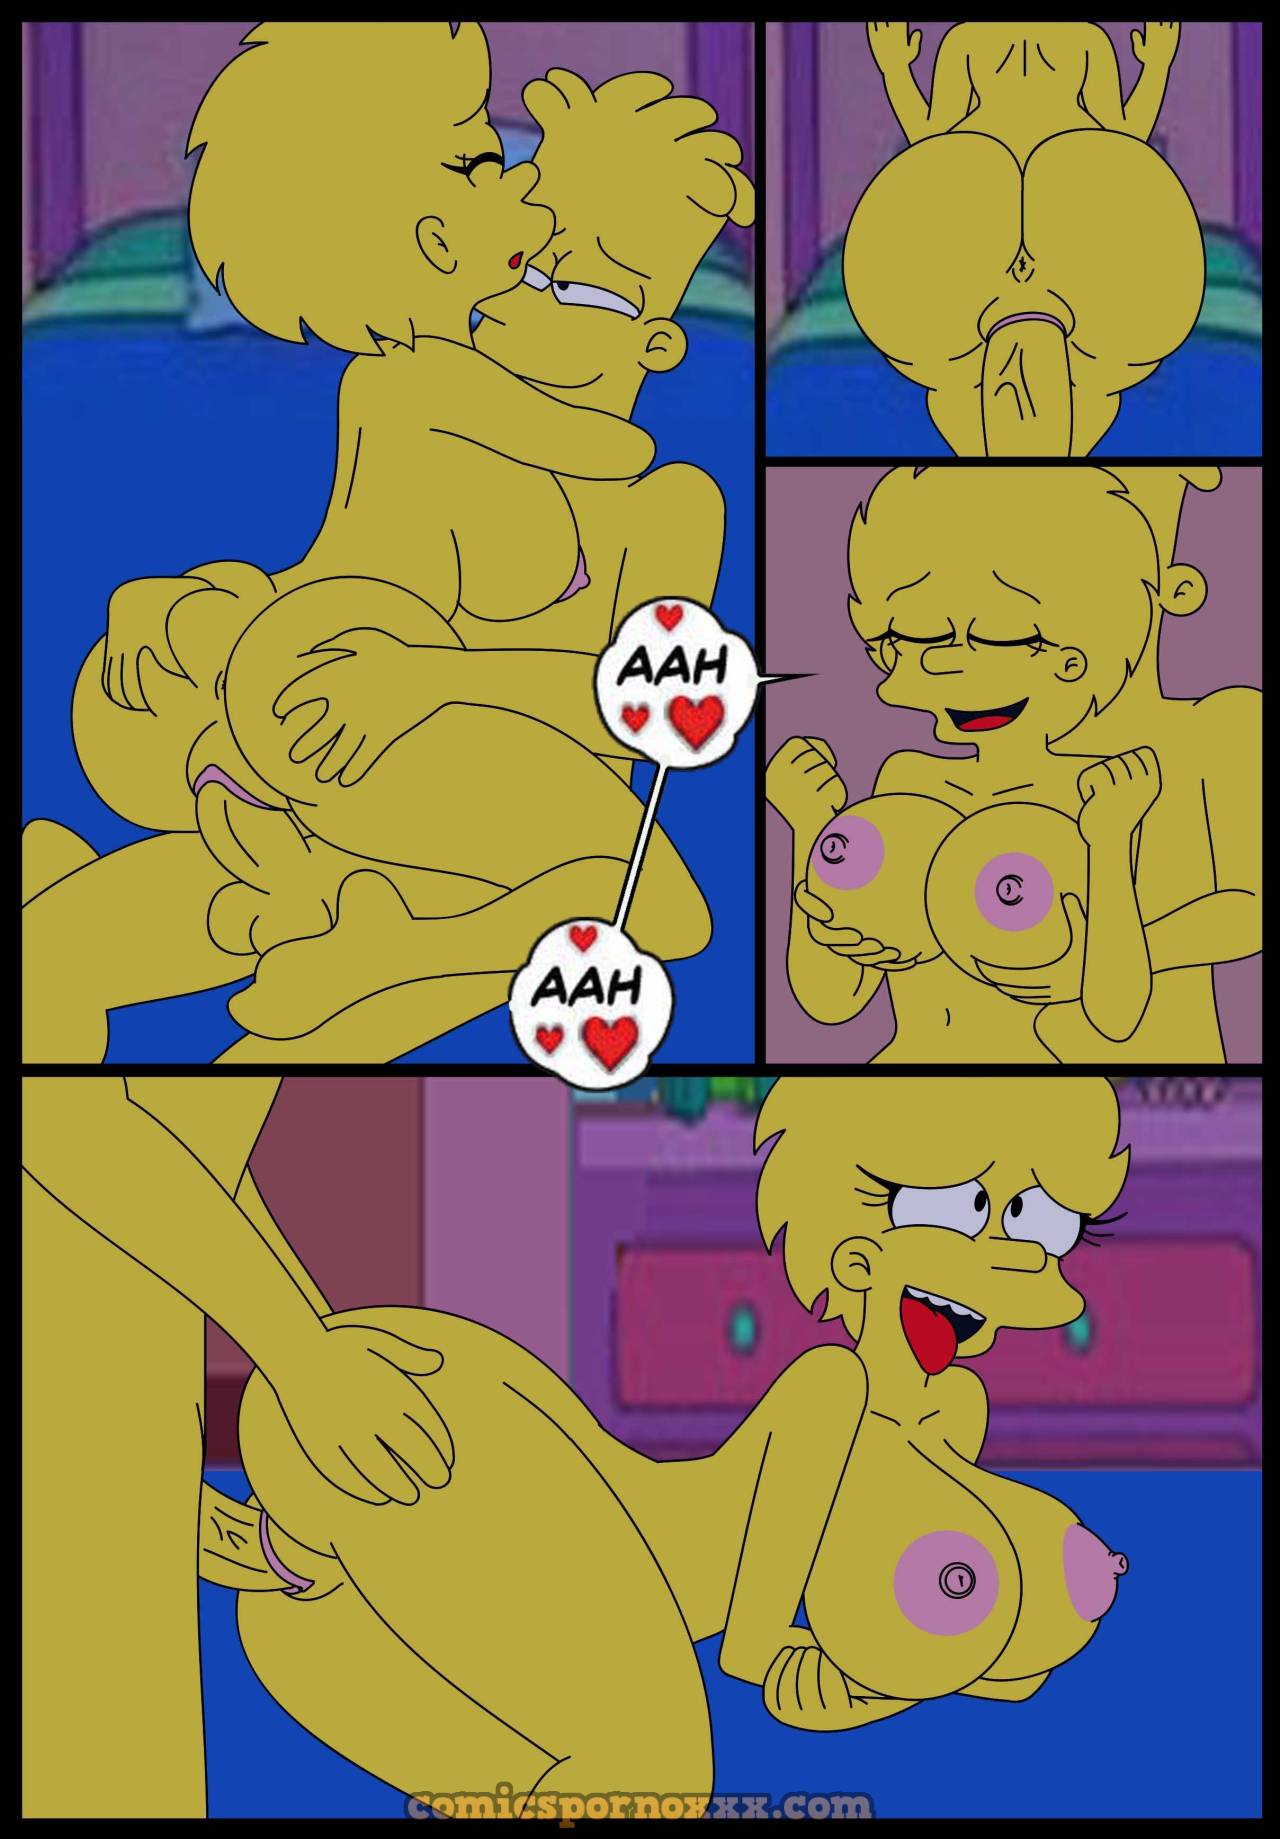 El Video Porno de Marge y Homero Simpson - 11 - Comics Porno - Hentai Manga - Cartoon XXX